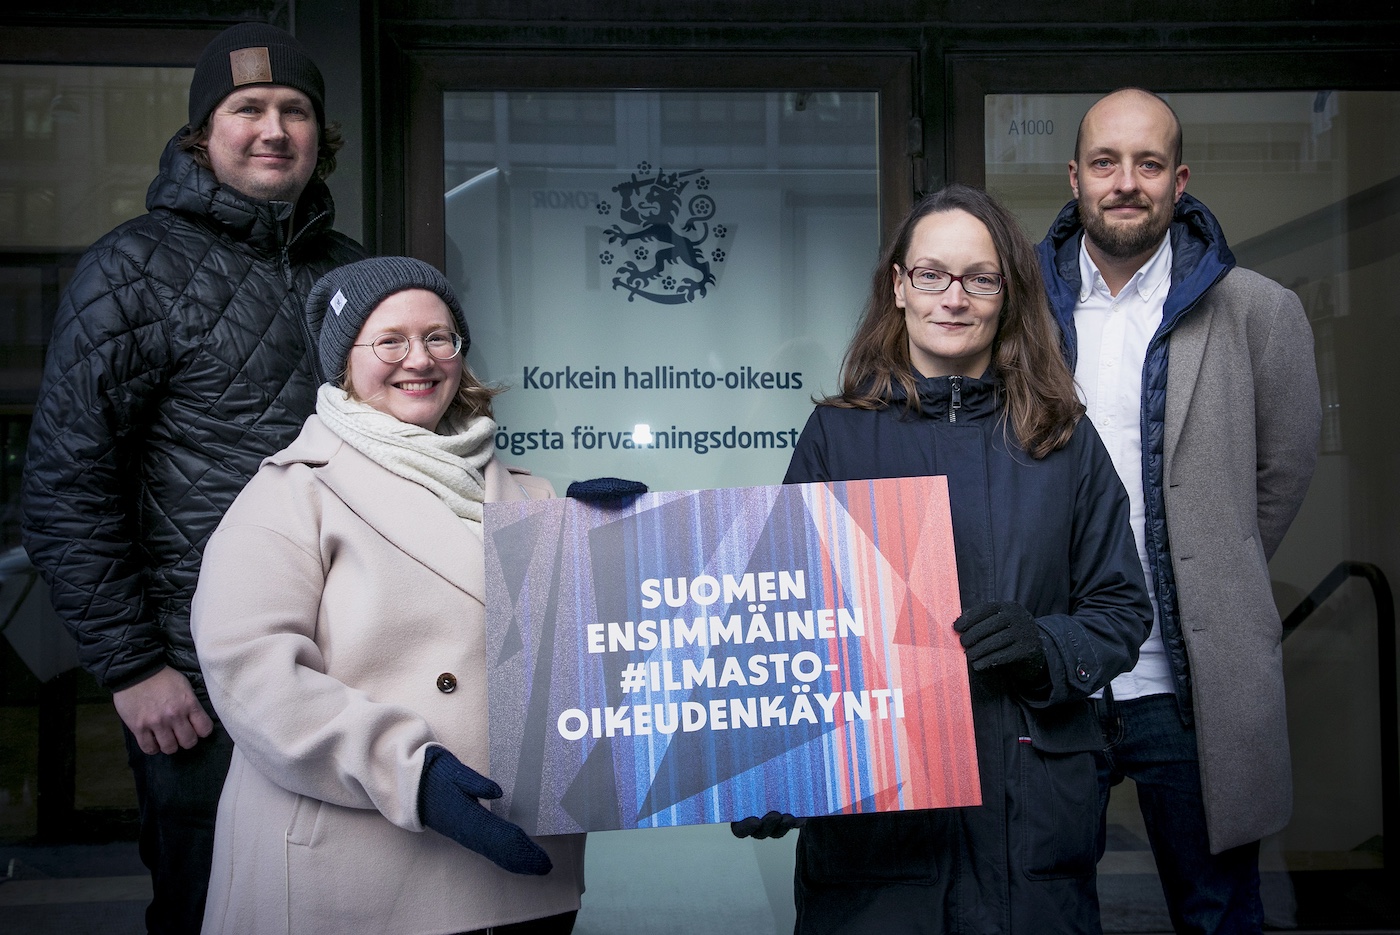 SLL:n ja Greenpeacen edustajat pitelevät korkeimman hallinto-oikeuden edessä kylttiä, jossa lukee "Suomen ensimmäinen #Ilmasto-oikeudenkäynti"